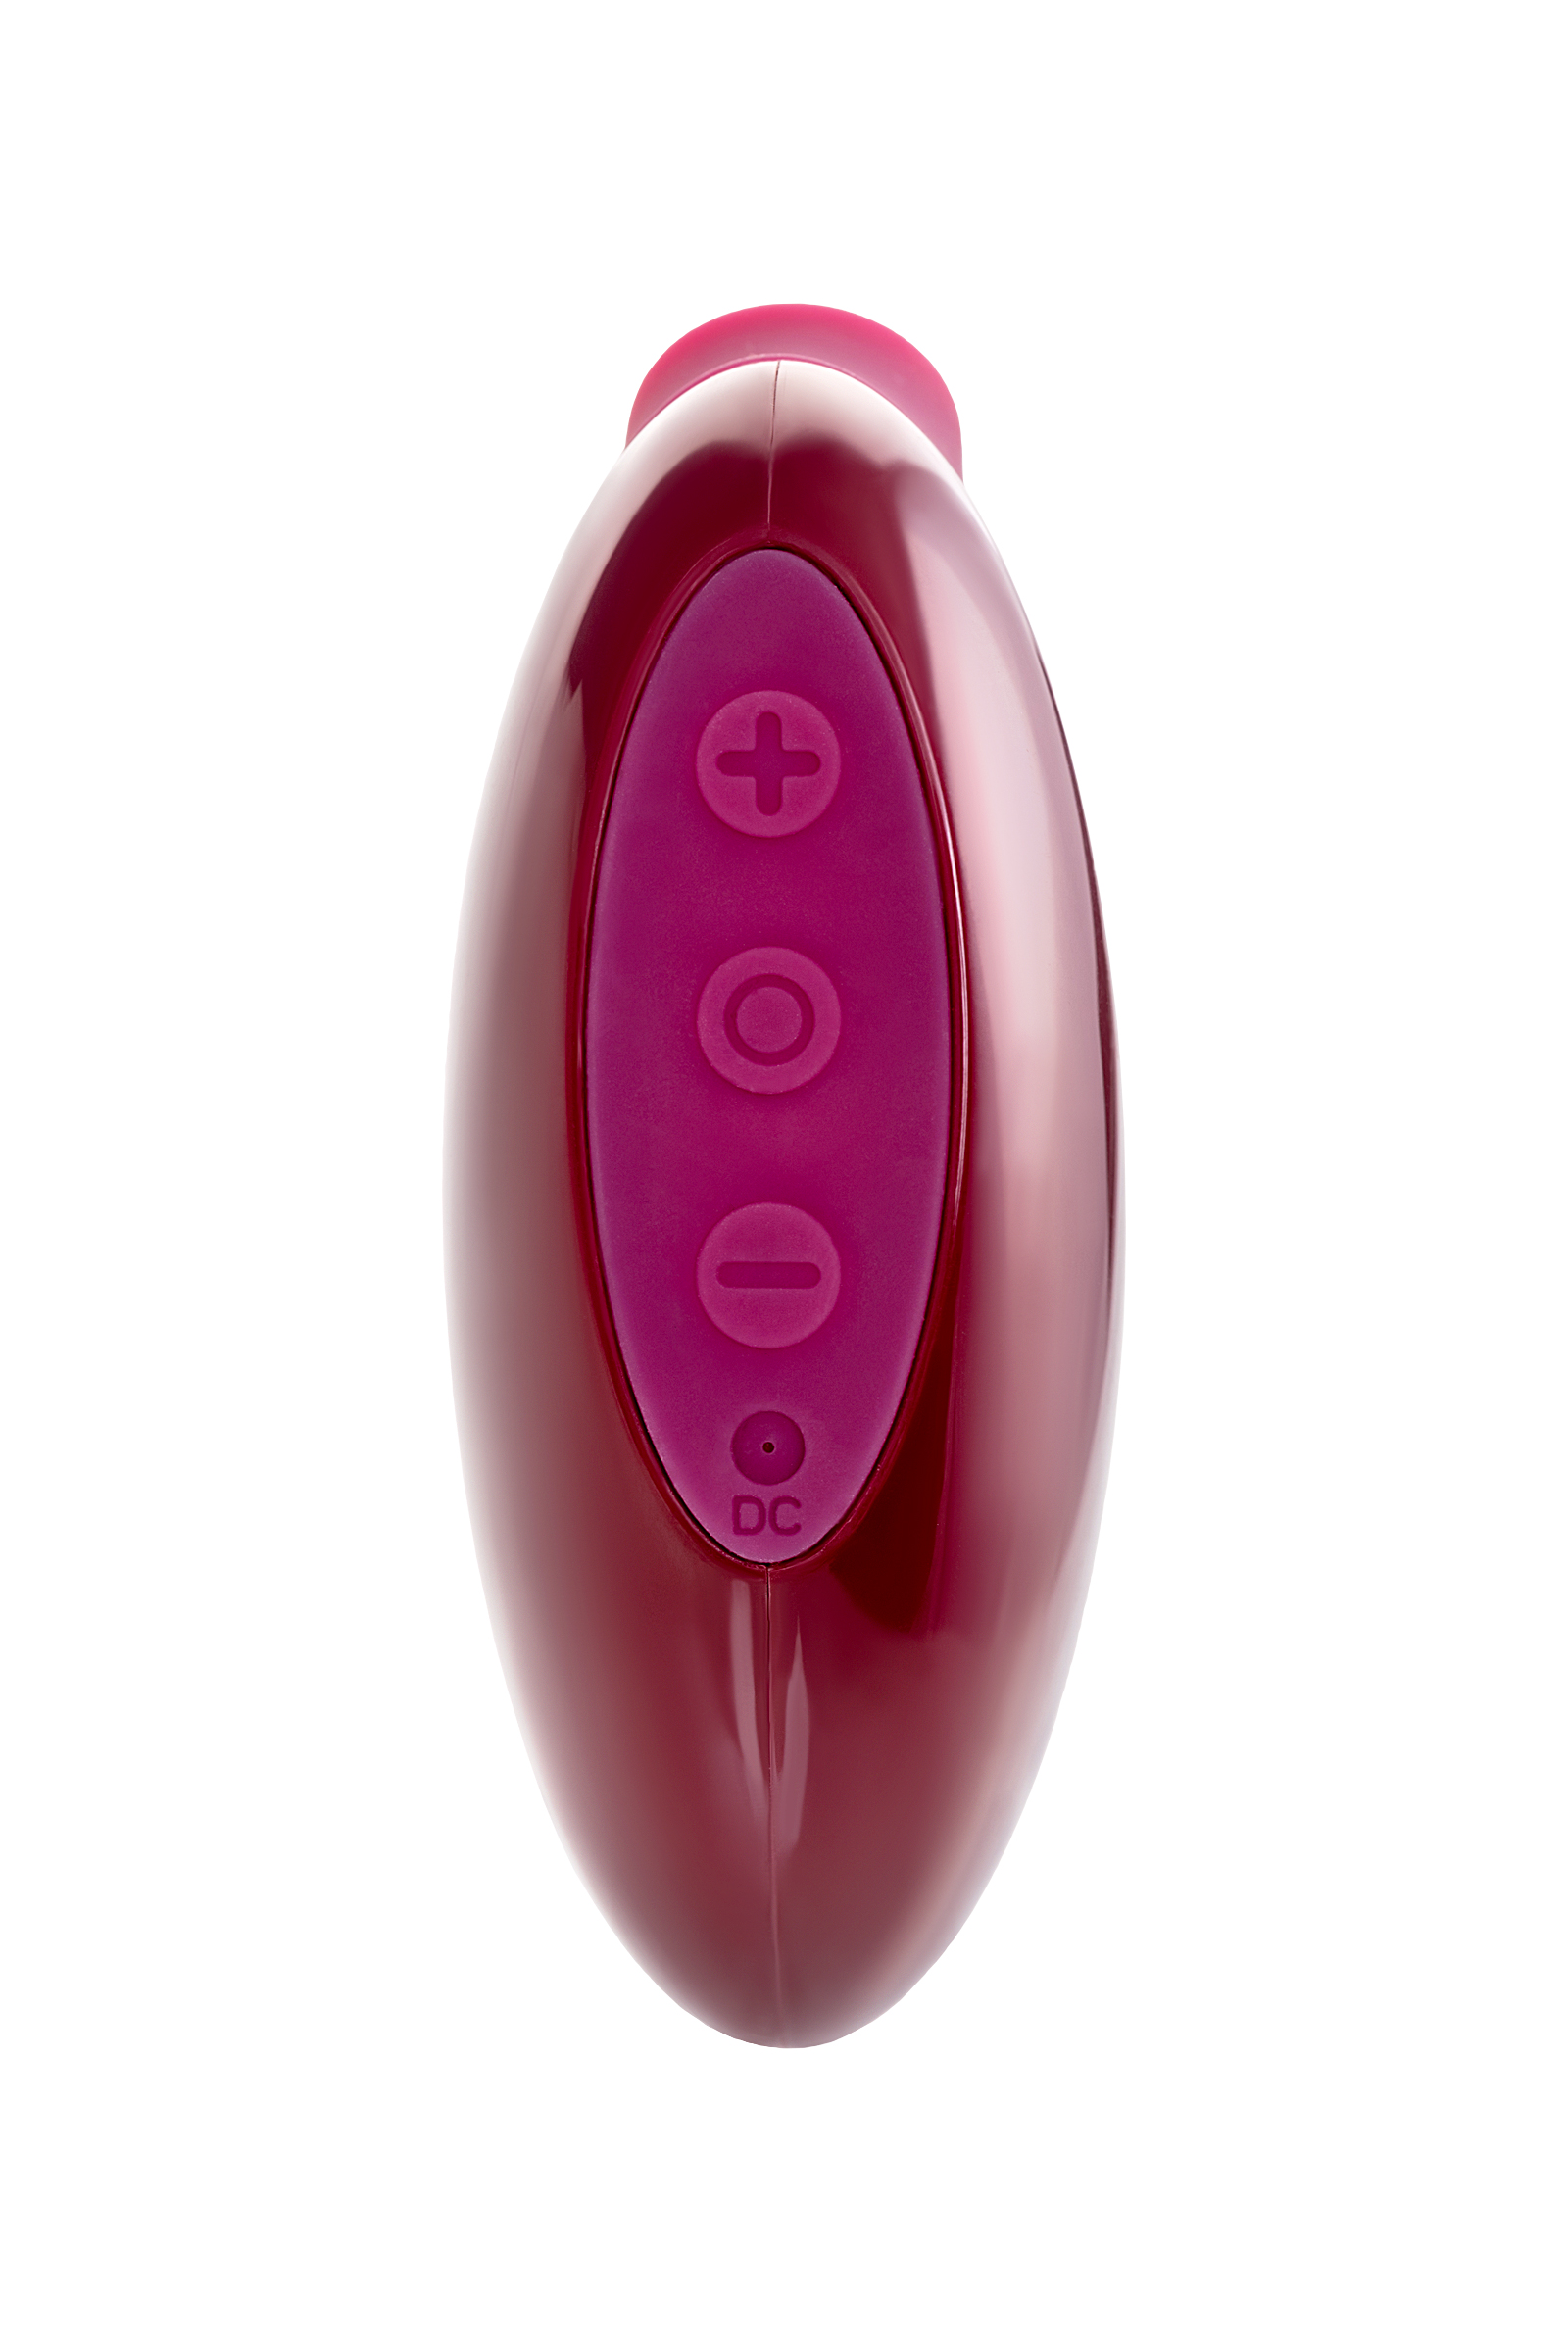 Вакуумный стимулятор клитора TOYFA A-Toys Myrty, бордовый, 9,8 см. Фото N2